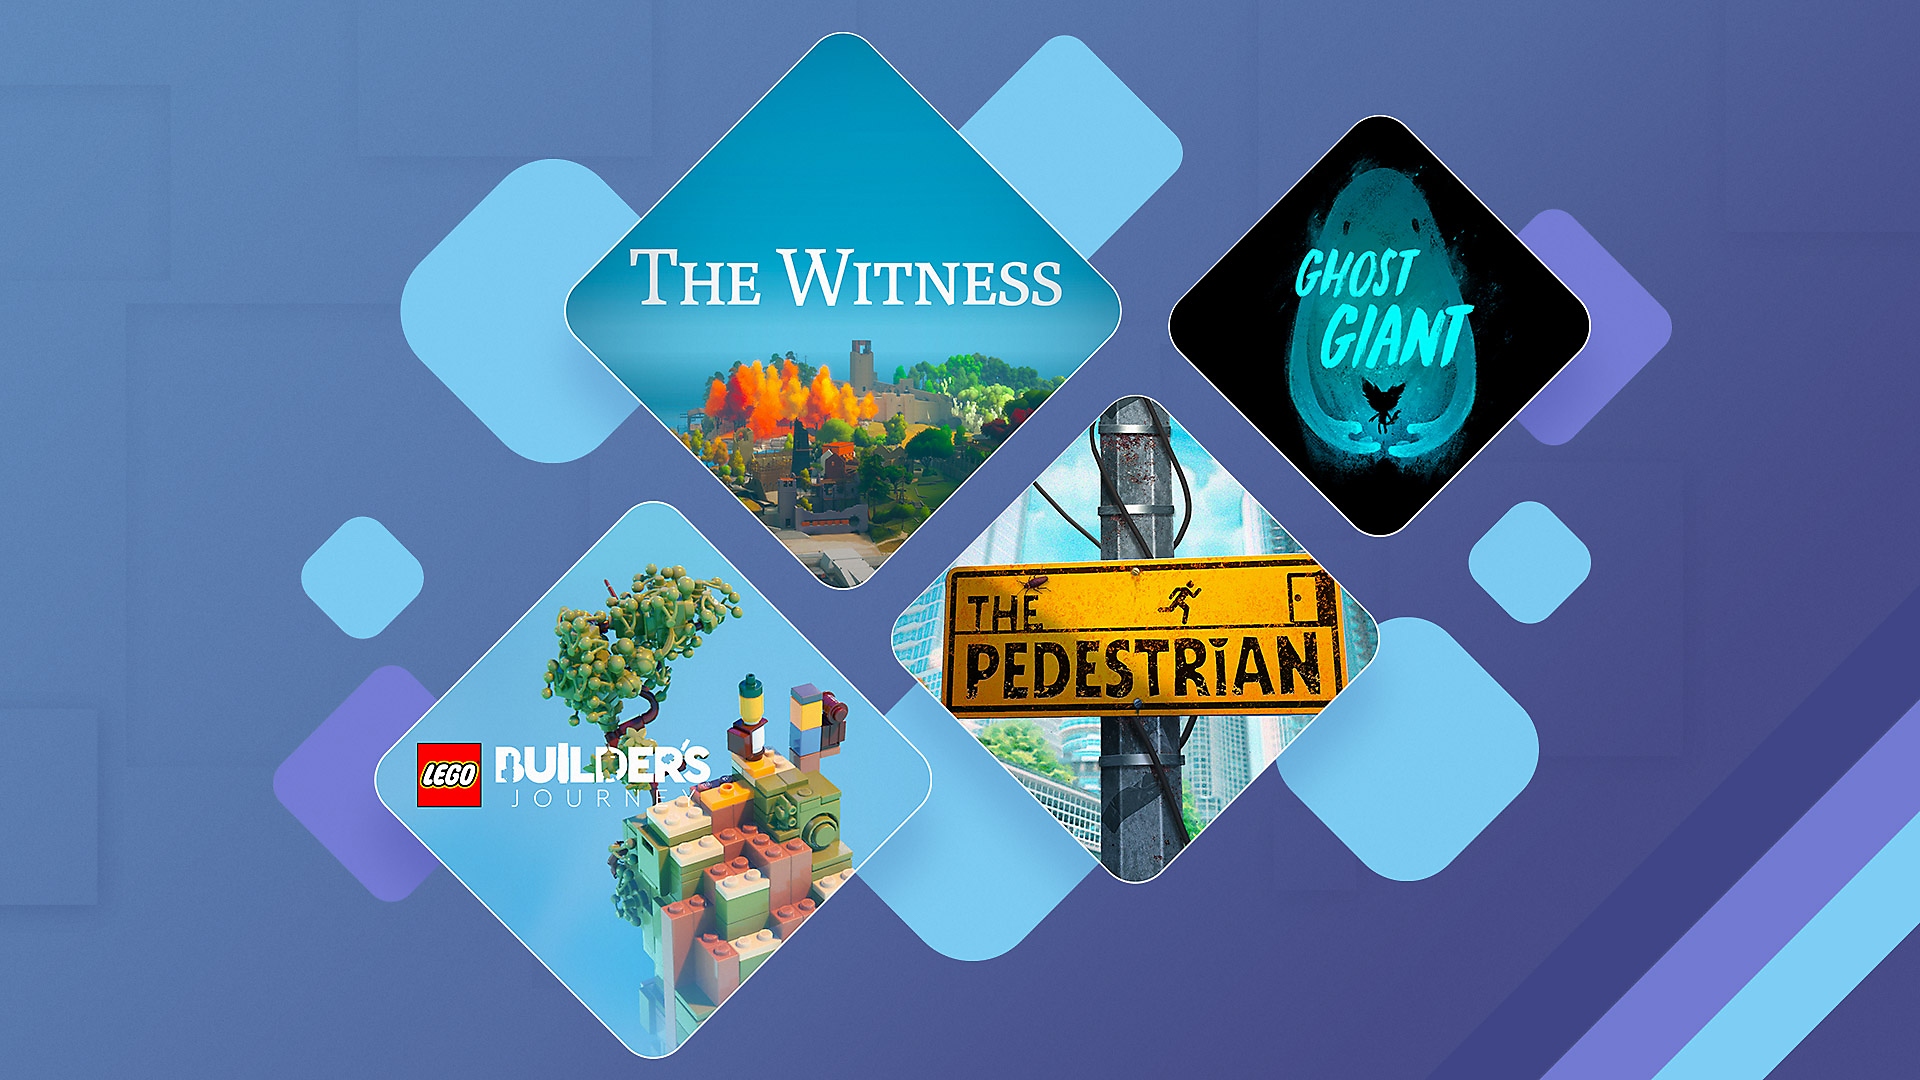 Arte promocional dos melhores quebra-cabeças para a PS4 e PS5, incluindo The Witness, Ghost Giant, Lego Builder's Journey e The Pedestrian.